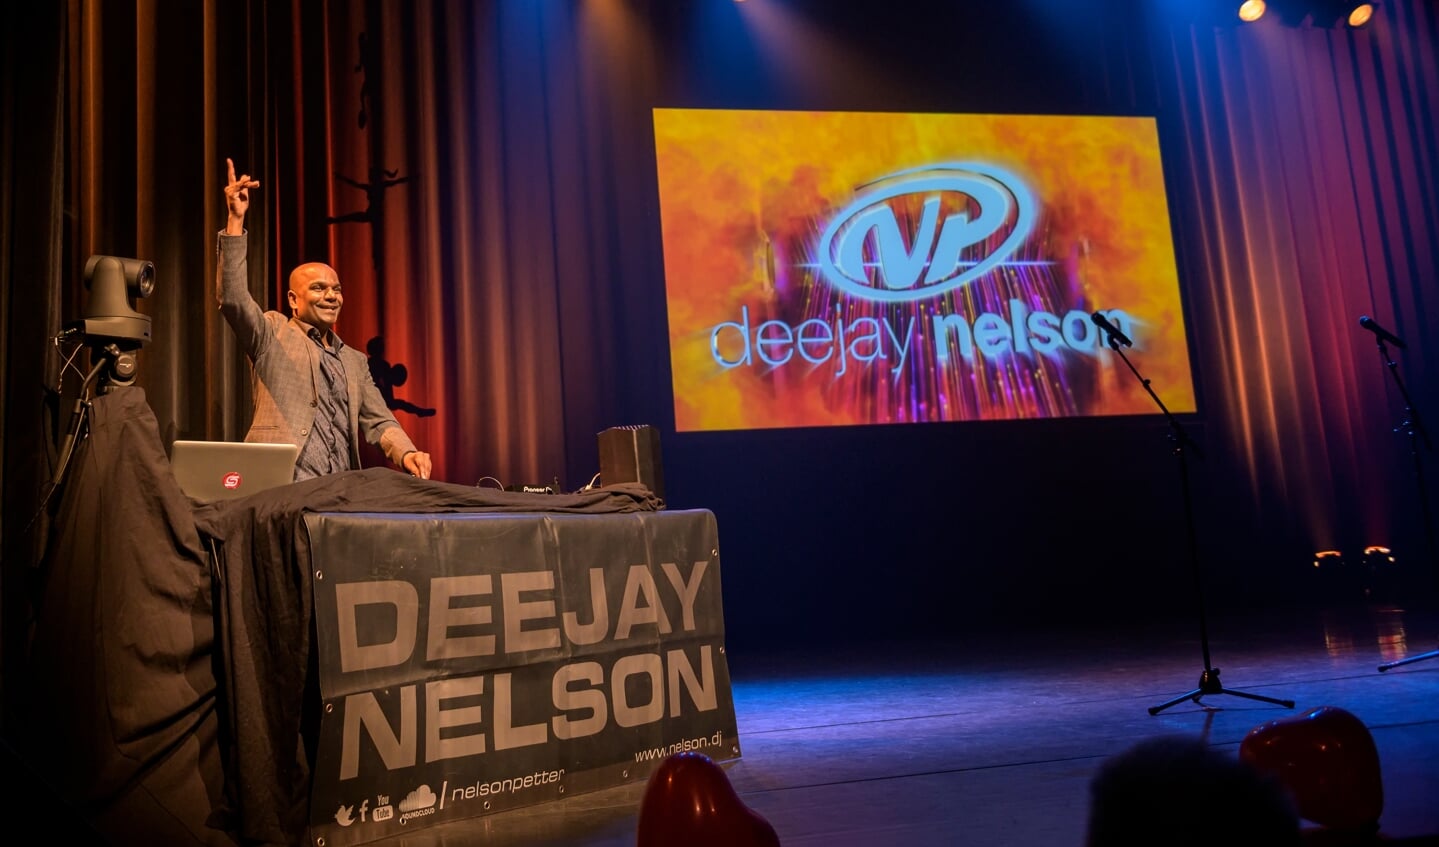 Deejay Nelson